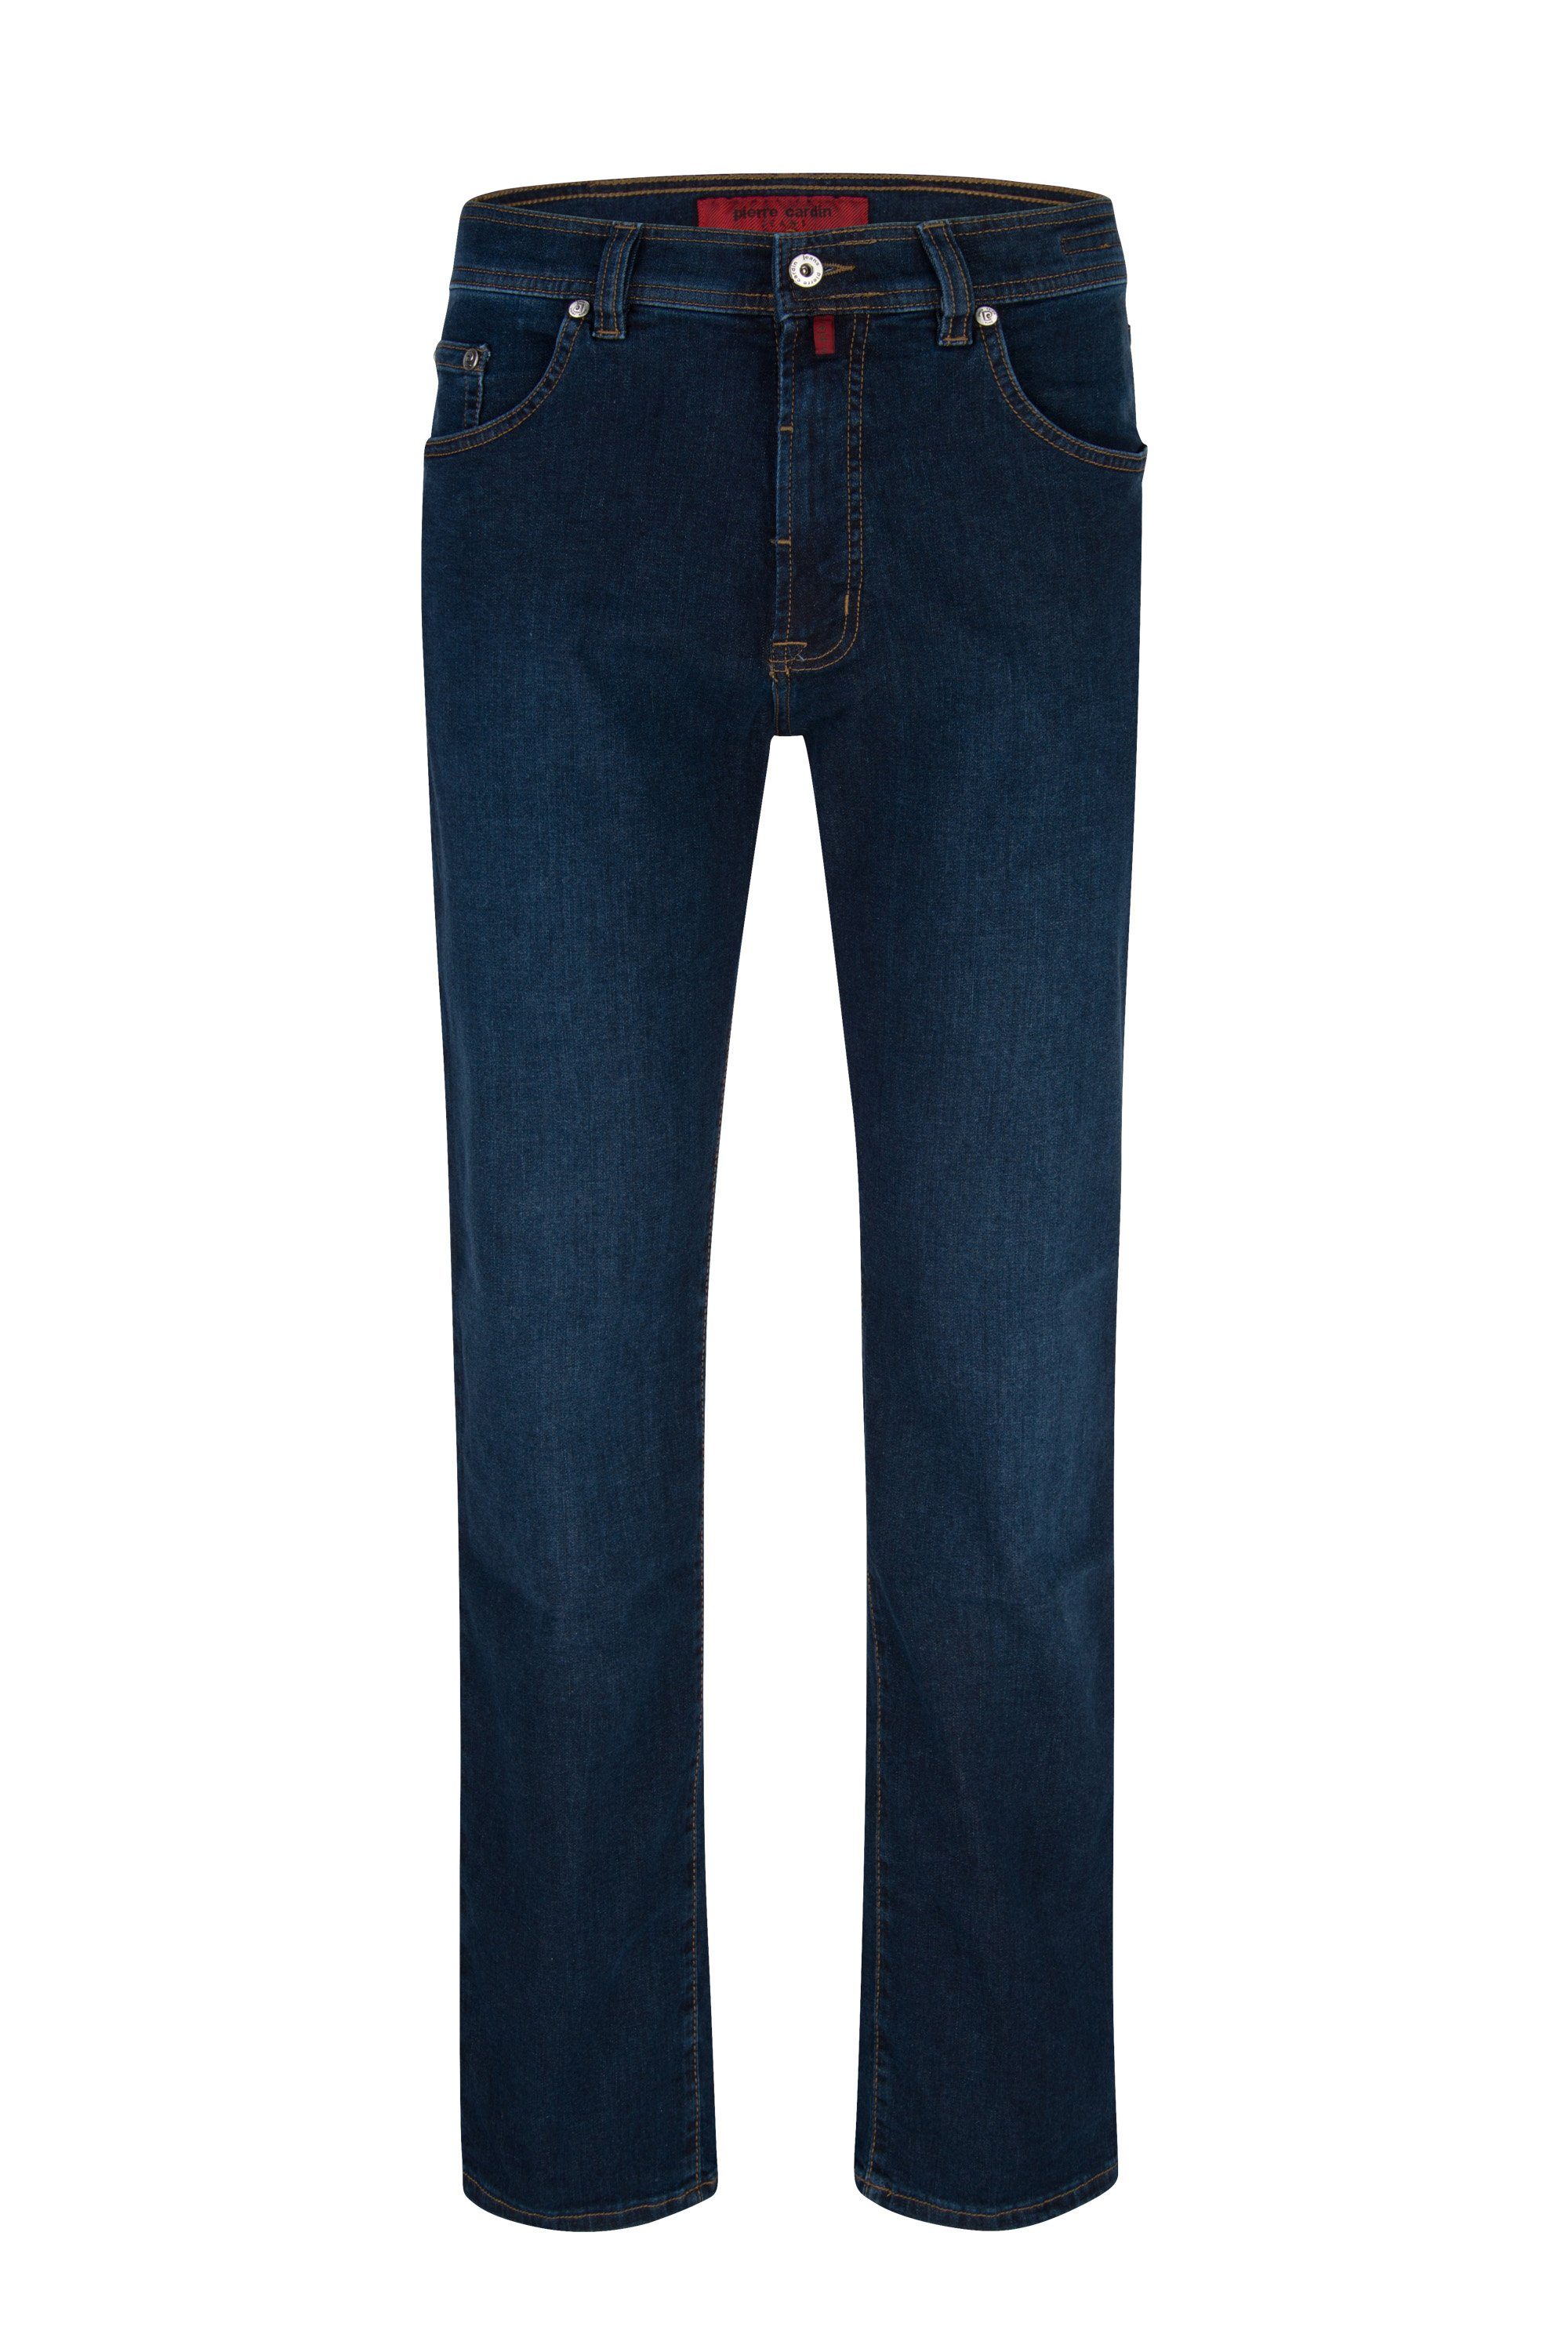 CARDIN PIERRE rinsed Pierre deep blue DIJON 5-Pocket-Jeans Cardin 7301.02 3231